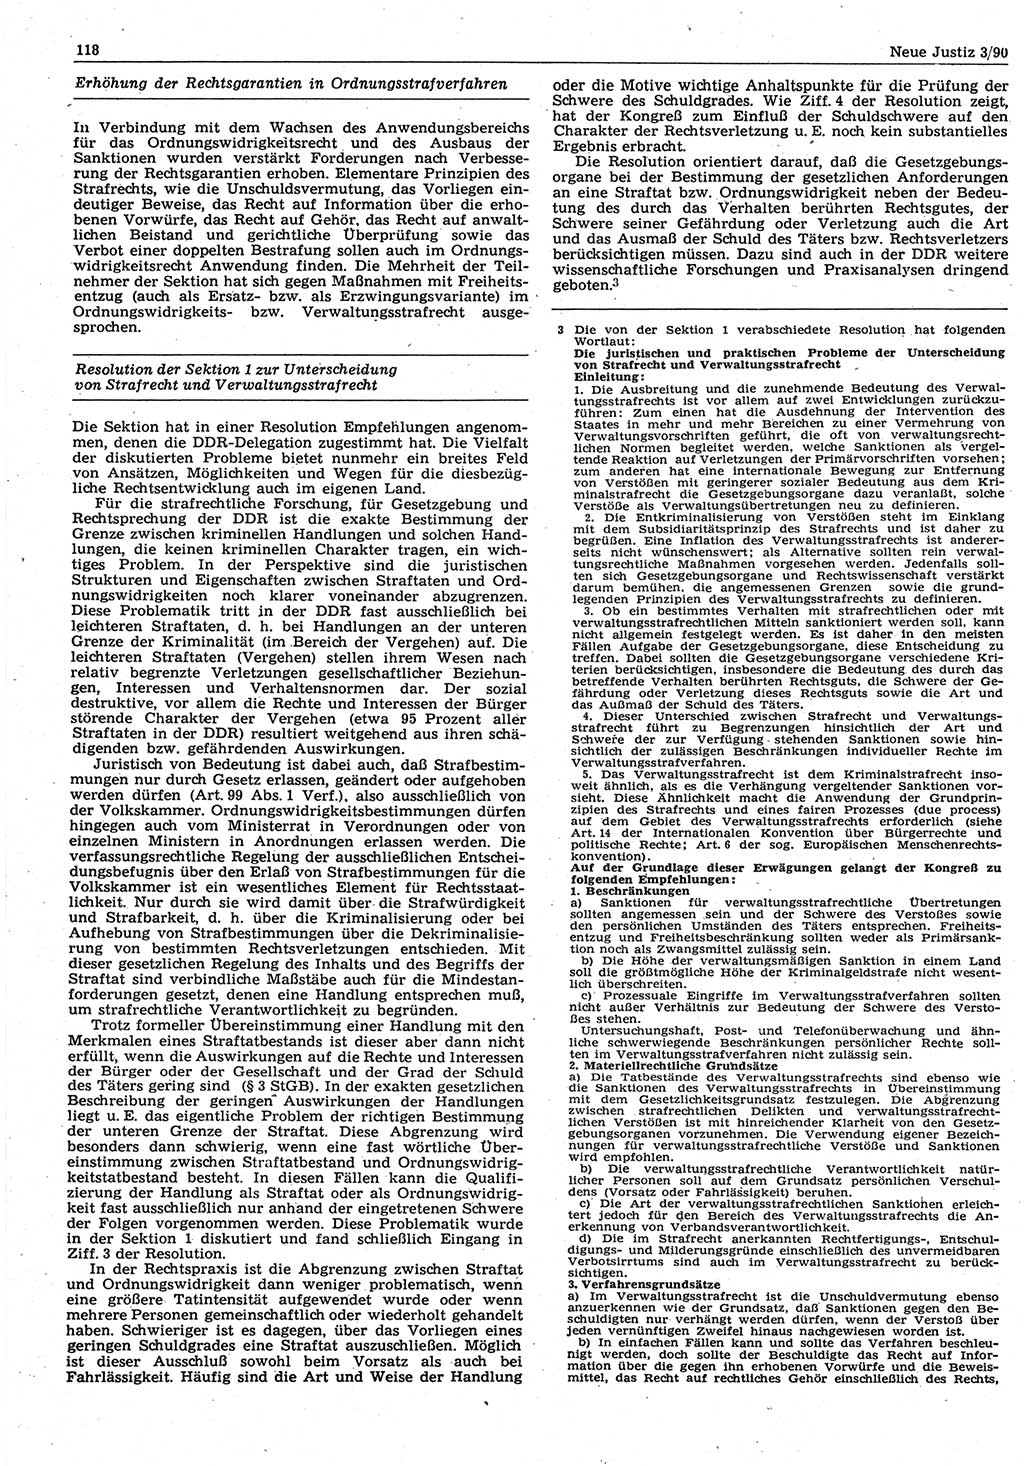 Neue Justiz (NJ), Zeitschrift für Rechtsetzung und Rechtsanwendung [Deutsche Demokratische Republik (DDR)], 44. Jahrgang 1990, Seite 118 (NJ DDR 1990, S. 118)